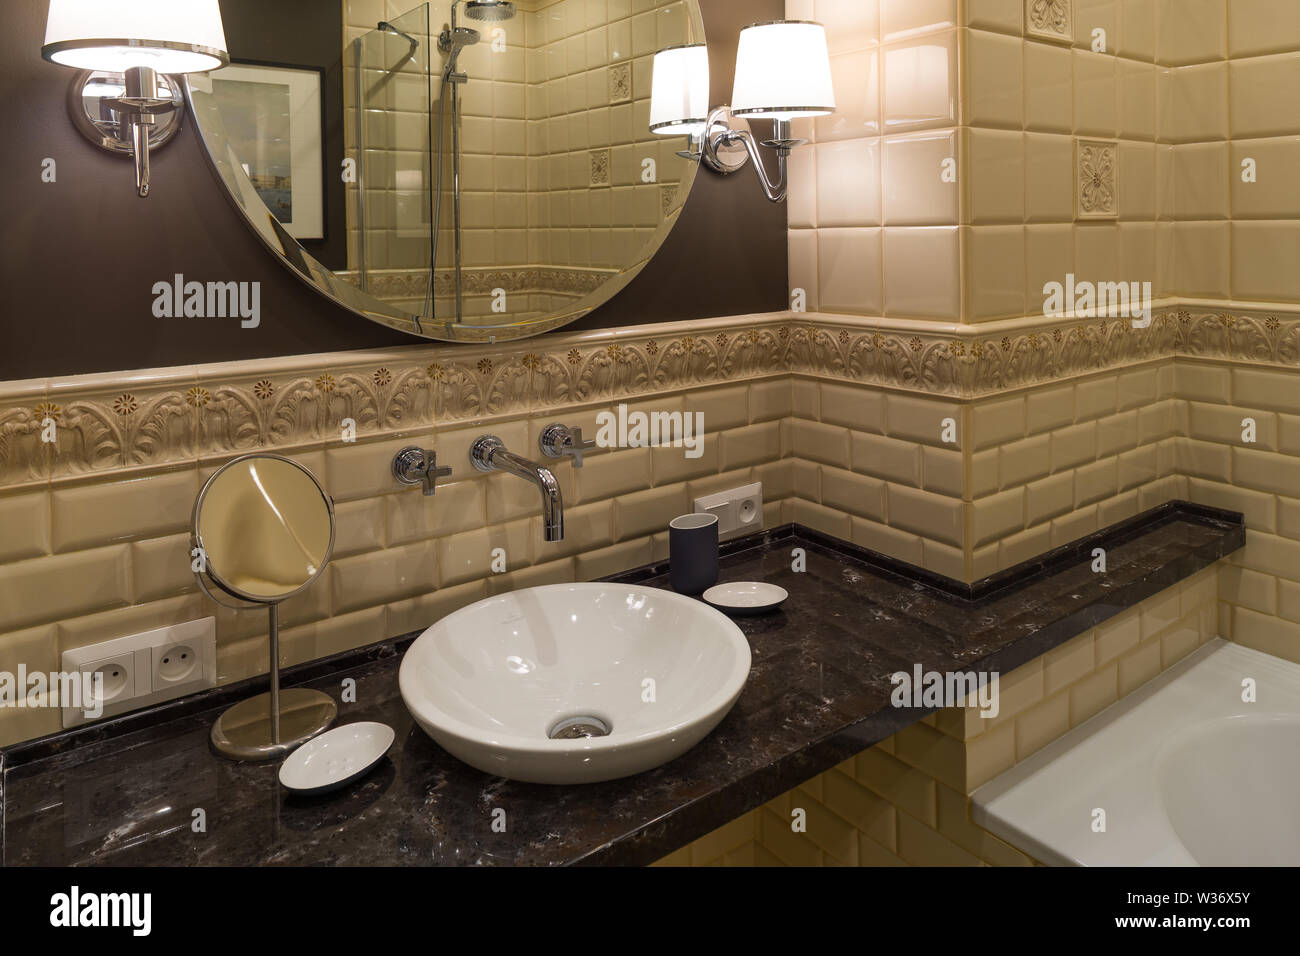 Waschbecken im Bad Interieur im klassischen Stil Stockfoto